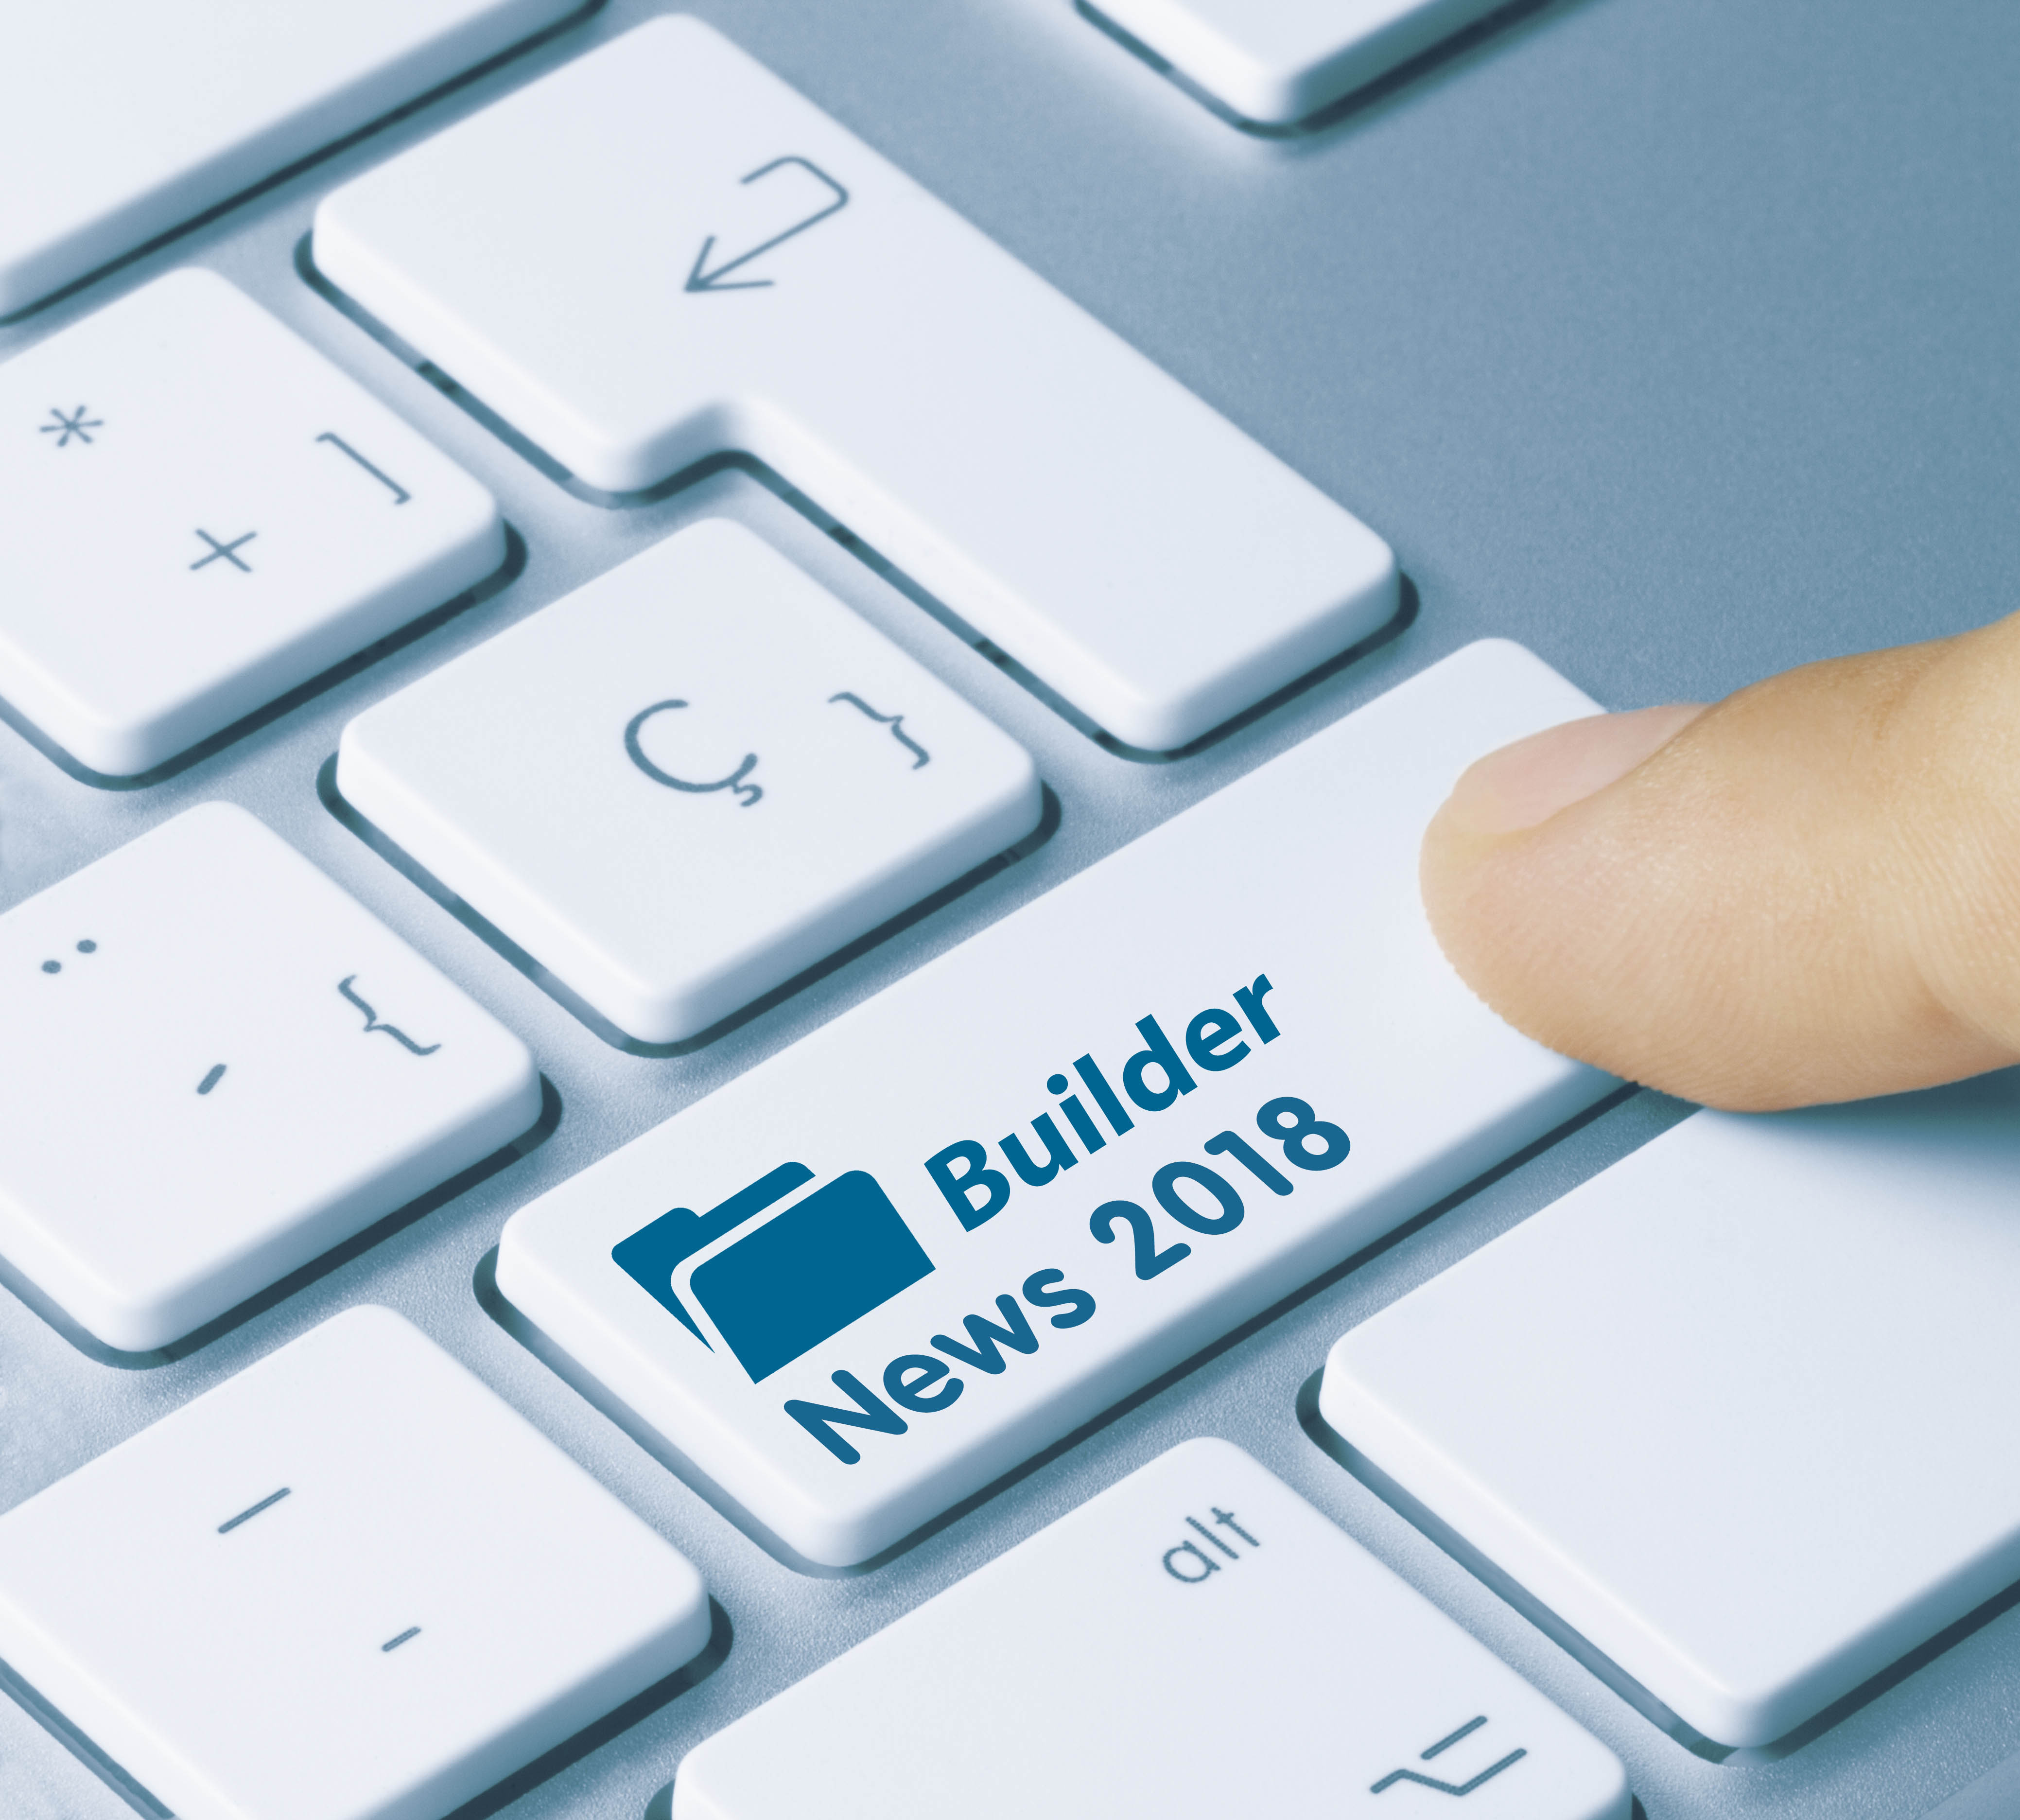 Home Builder News 2018